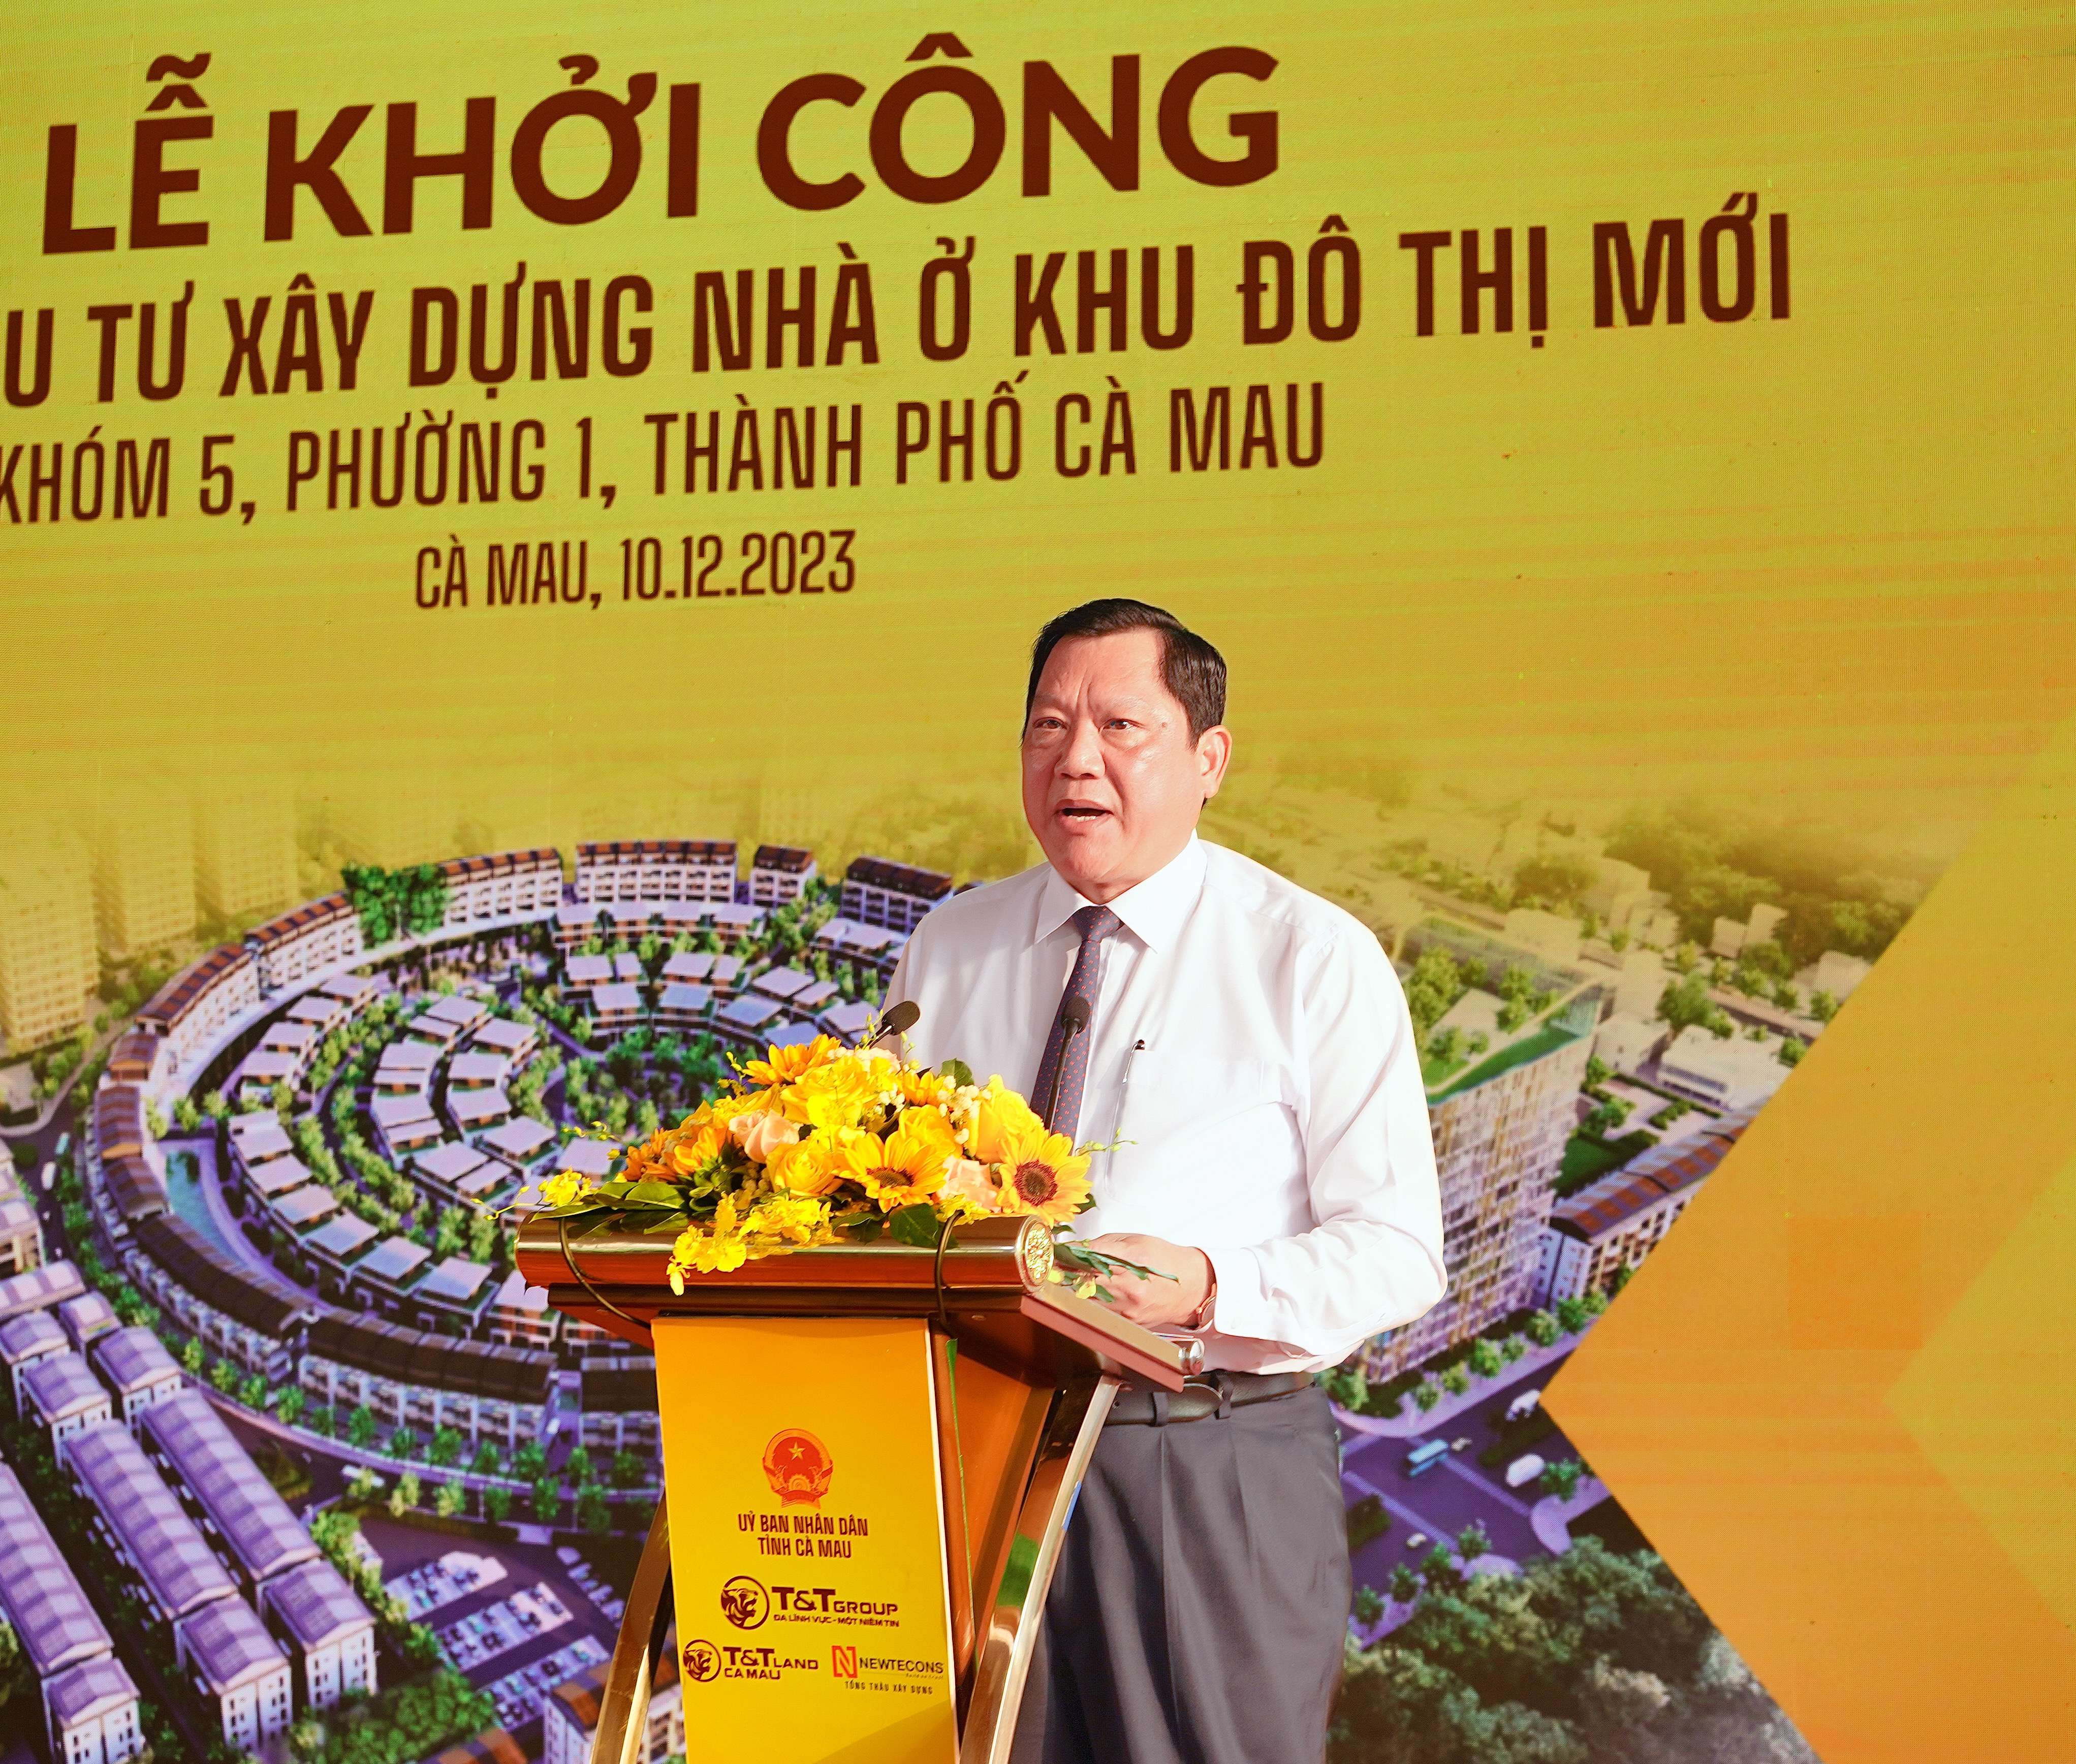 Ông Lâm Văn Bi, Phó Chủ tịch UBND tỉnh Cà Mau phát biểu tại lễ khởi công dự án.